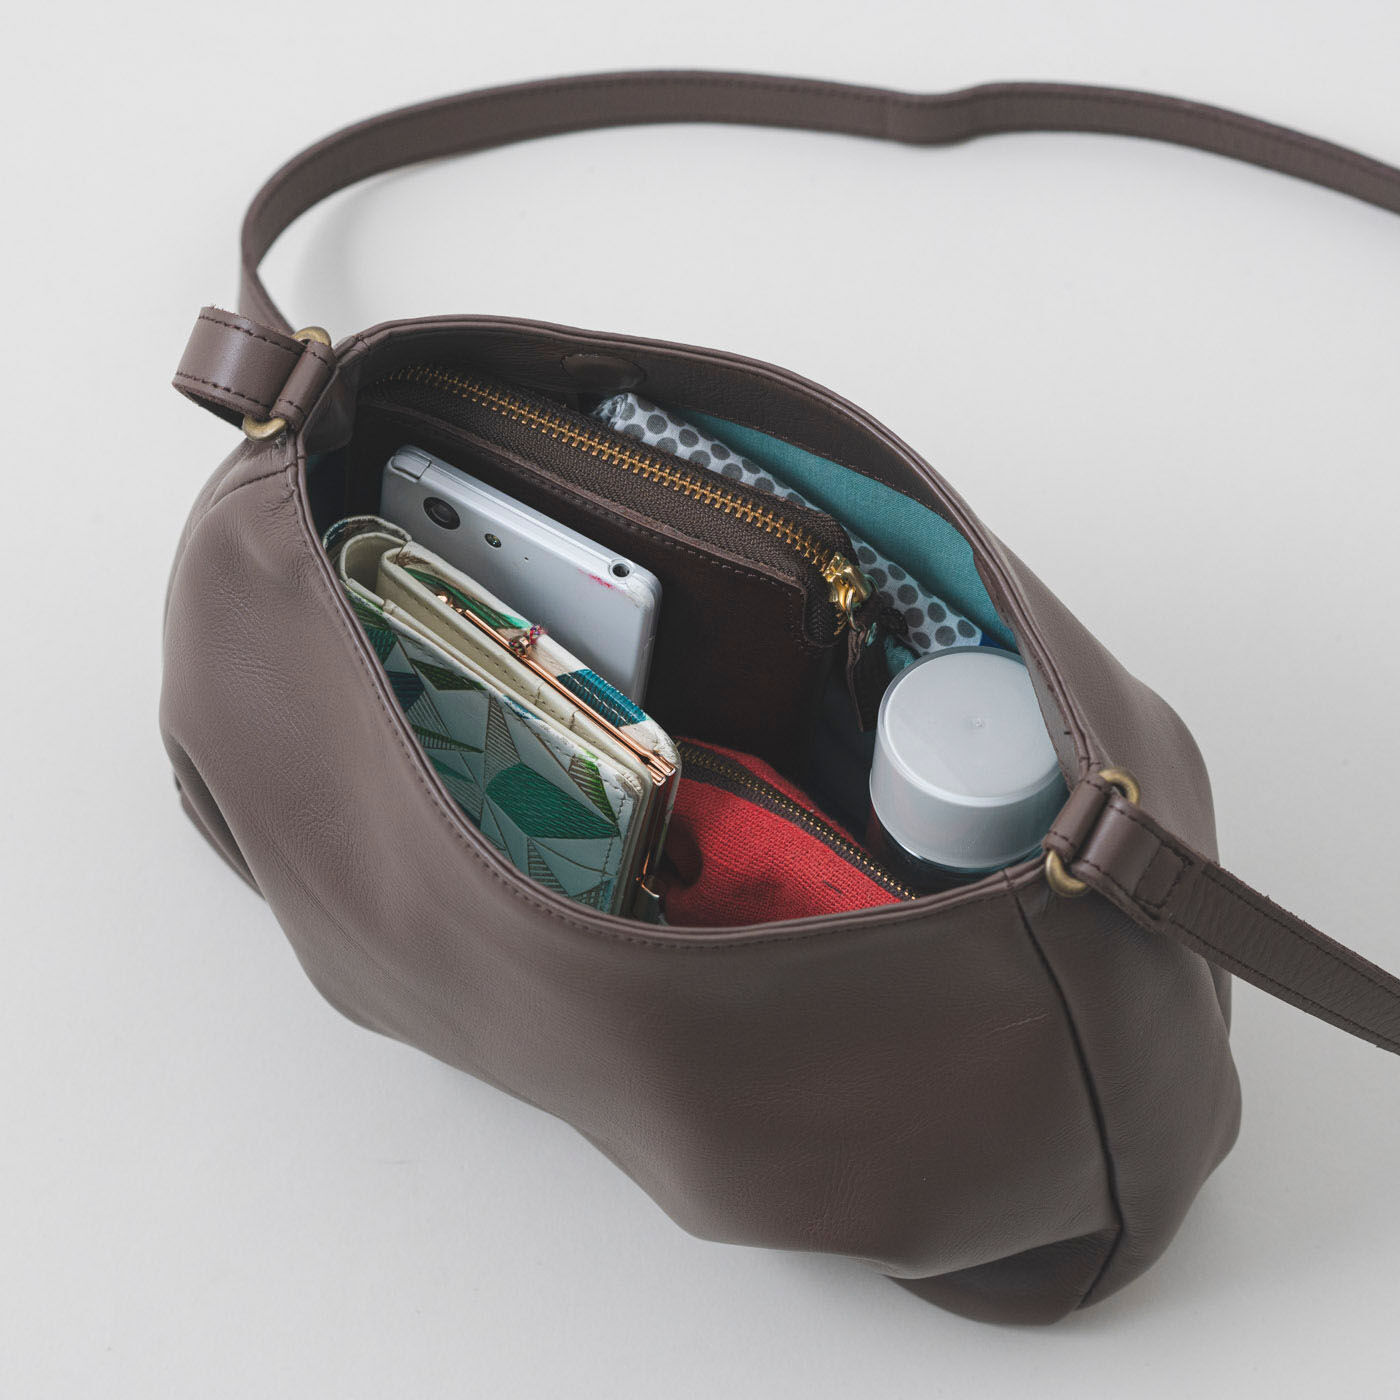 ＆Stories|鞄職人とお母さんが作った 職人本革のパルトゥネールバッグ〈文人茶色〉|中身はこれくらい入ります。小さい水筒や長財布を入れることができます。